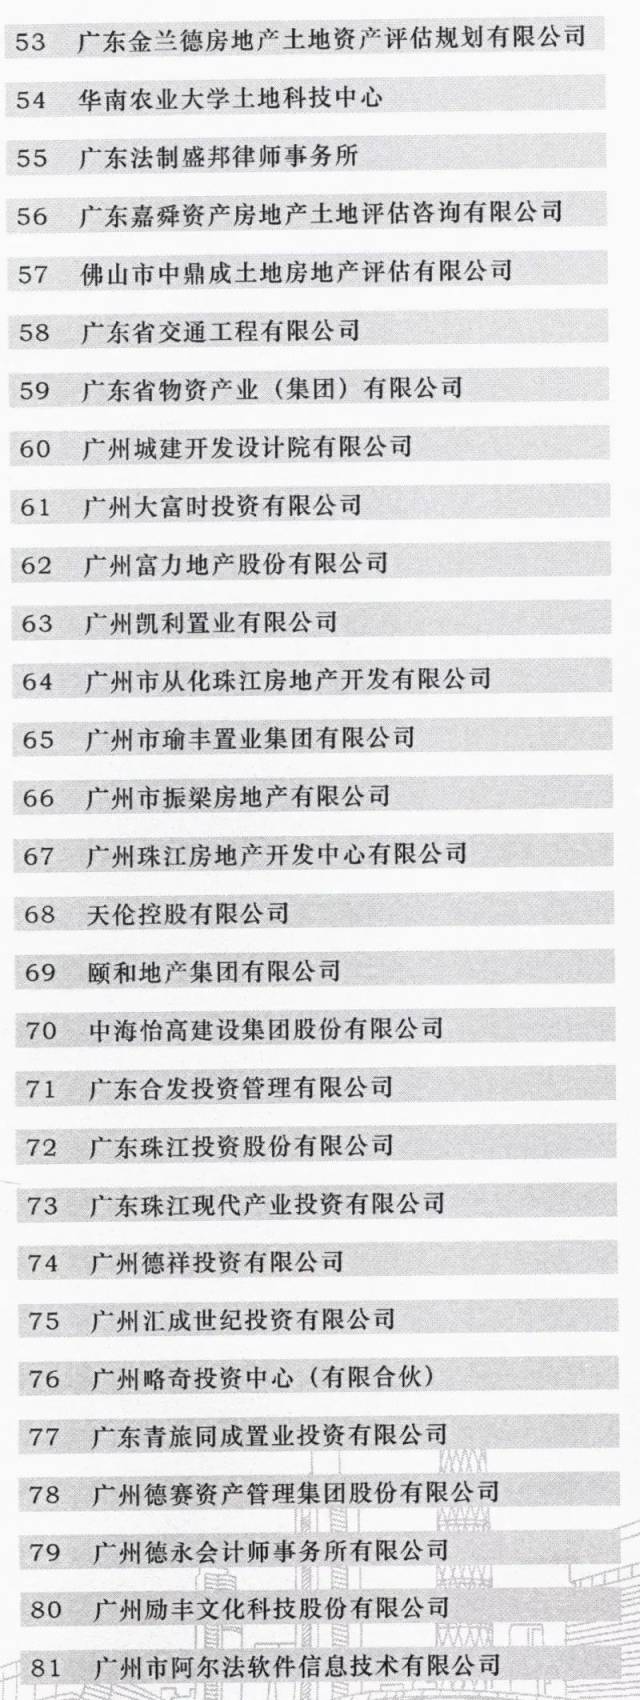 广东成立全国首个省级“三旧”改造协会  江门博富地产成为首批会员单位(图3)